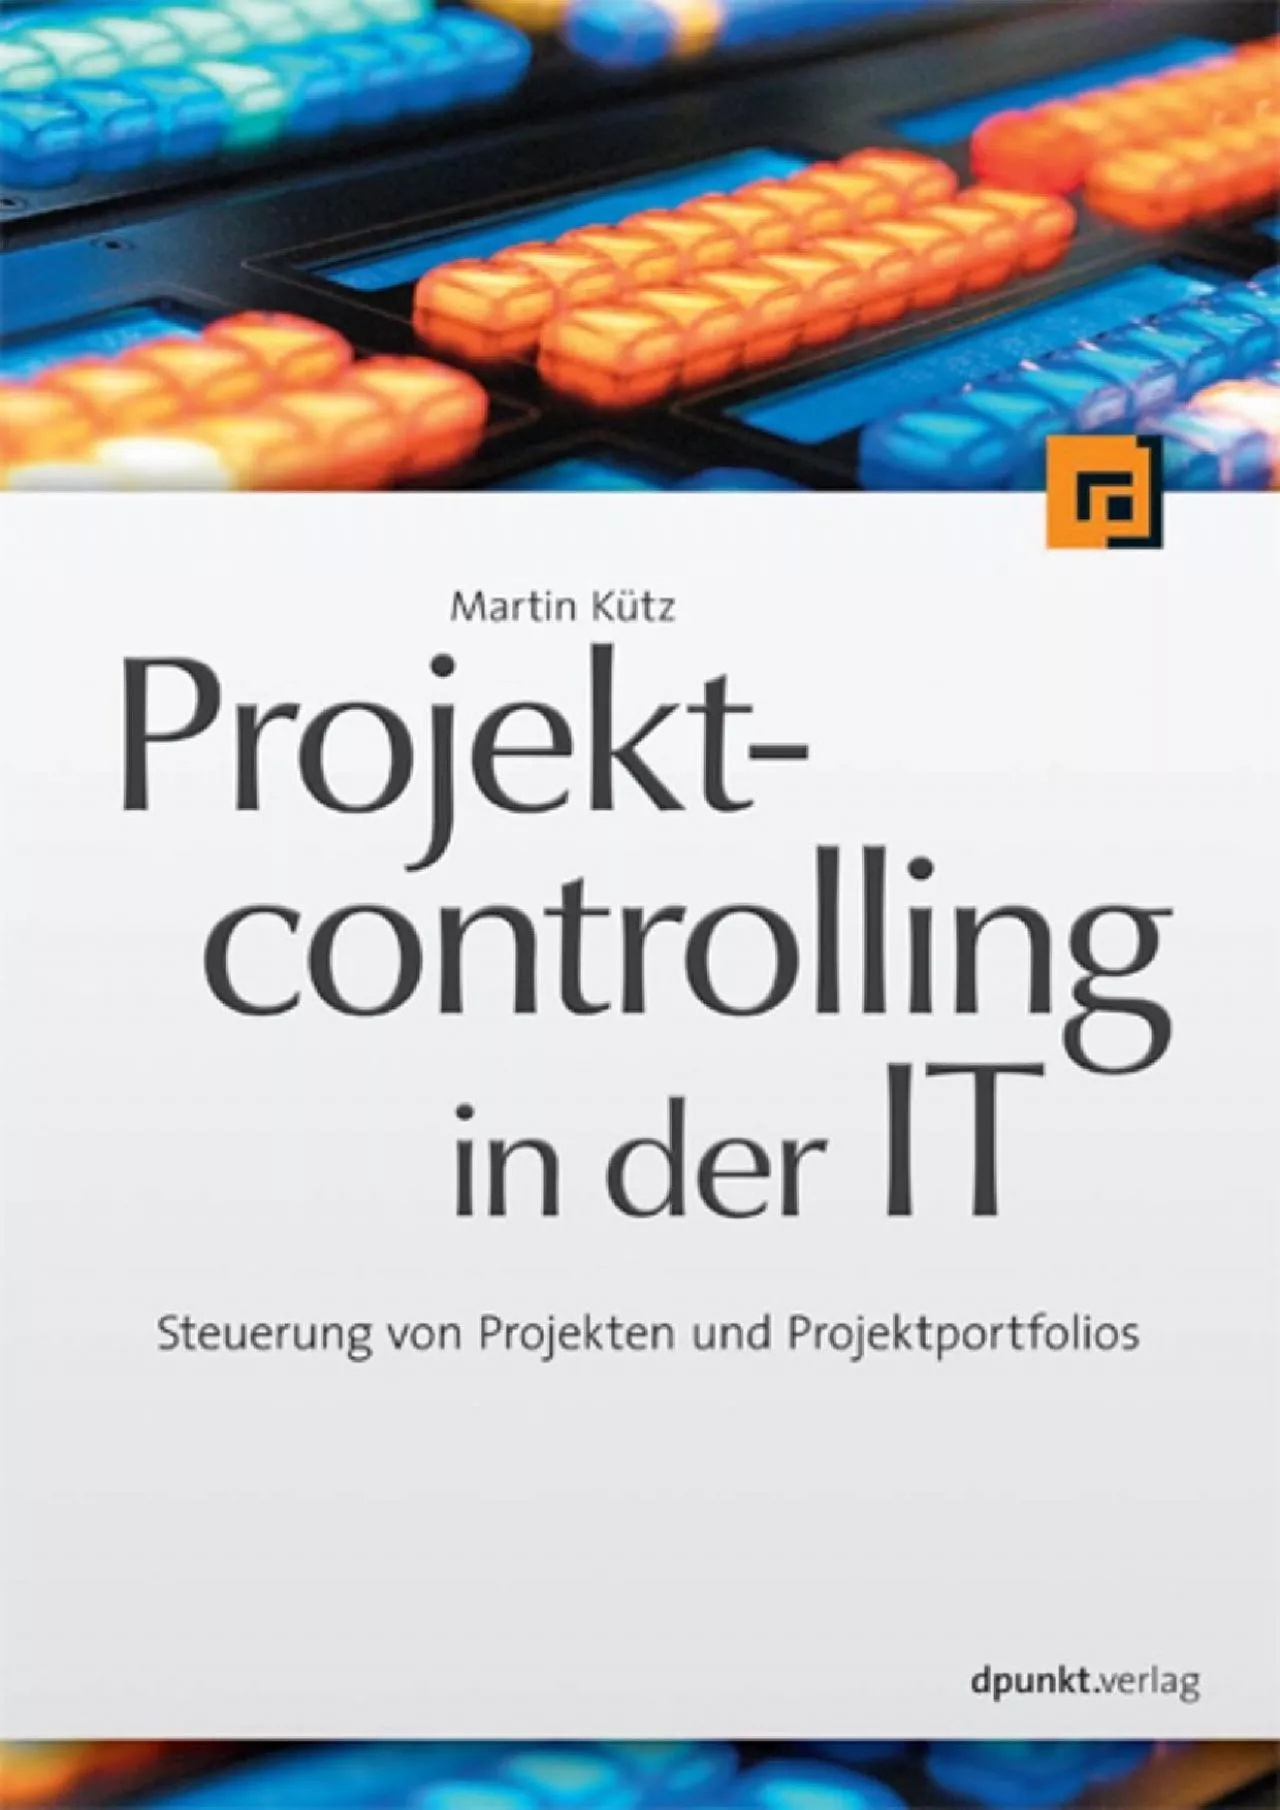 (BOOK)-Projektcontrolling in der IT: Steuerung von Projekten und Projektportfolios (German